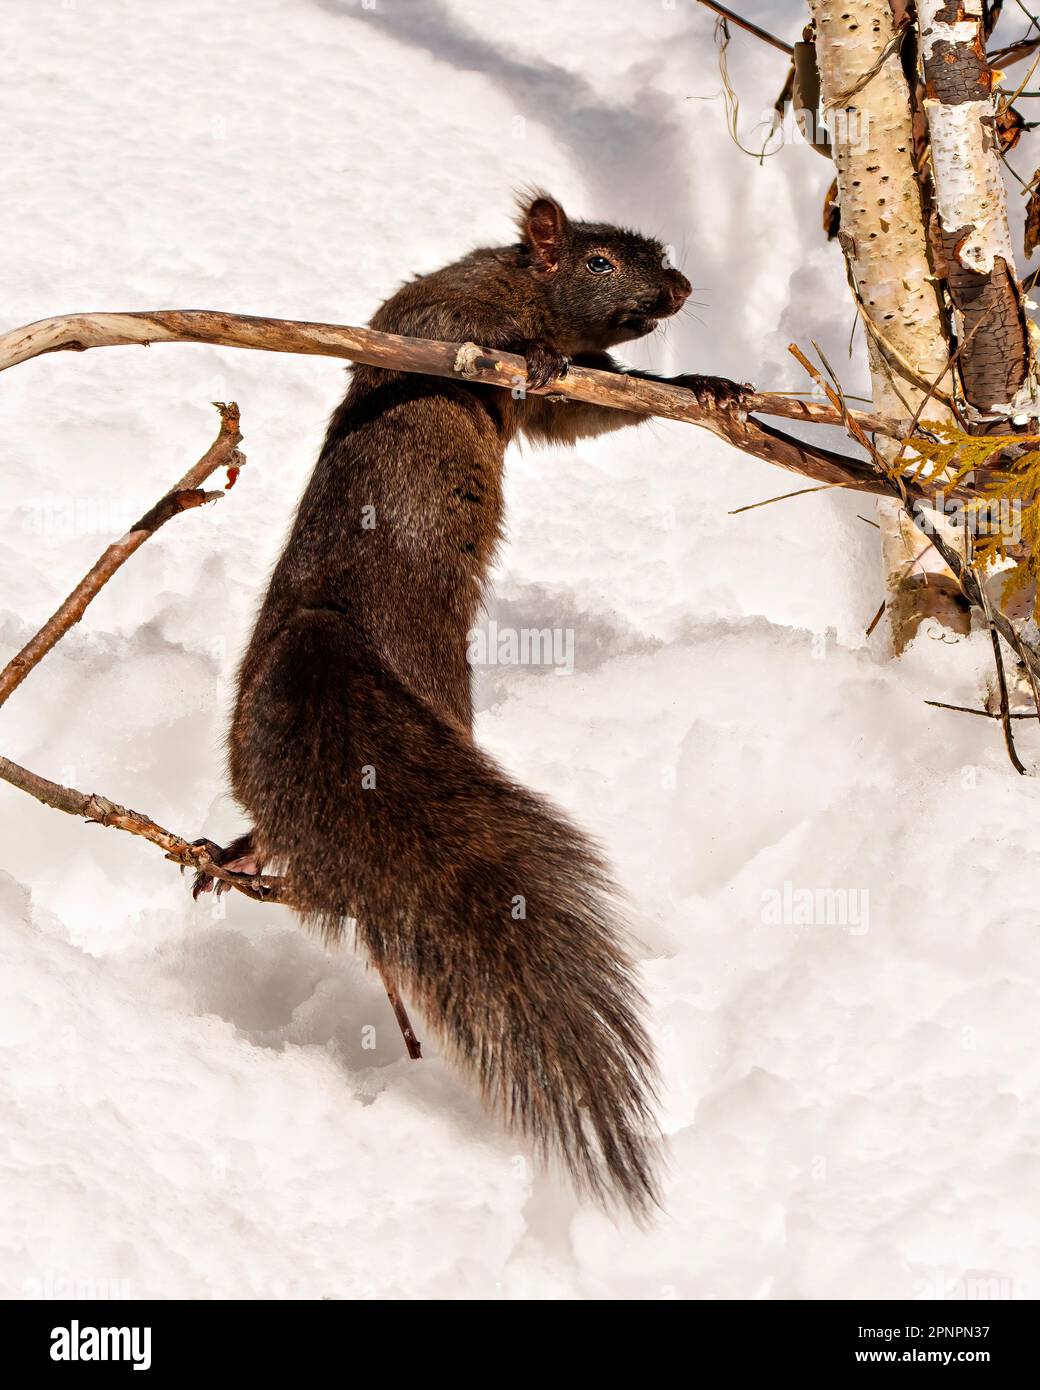 Schwarzes Eichhörnchen aus nächster Nähe in der Wintersaison, klettern auf einen Ast in seiner Umgebung und seinem Lebensraum, mit schwarzer Farbe und buschigem Schwanz. Stockfoto